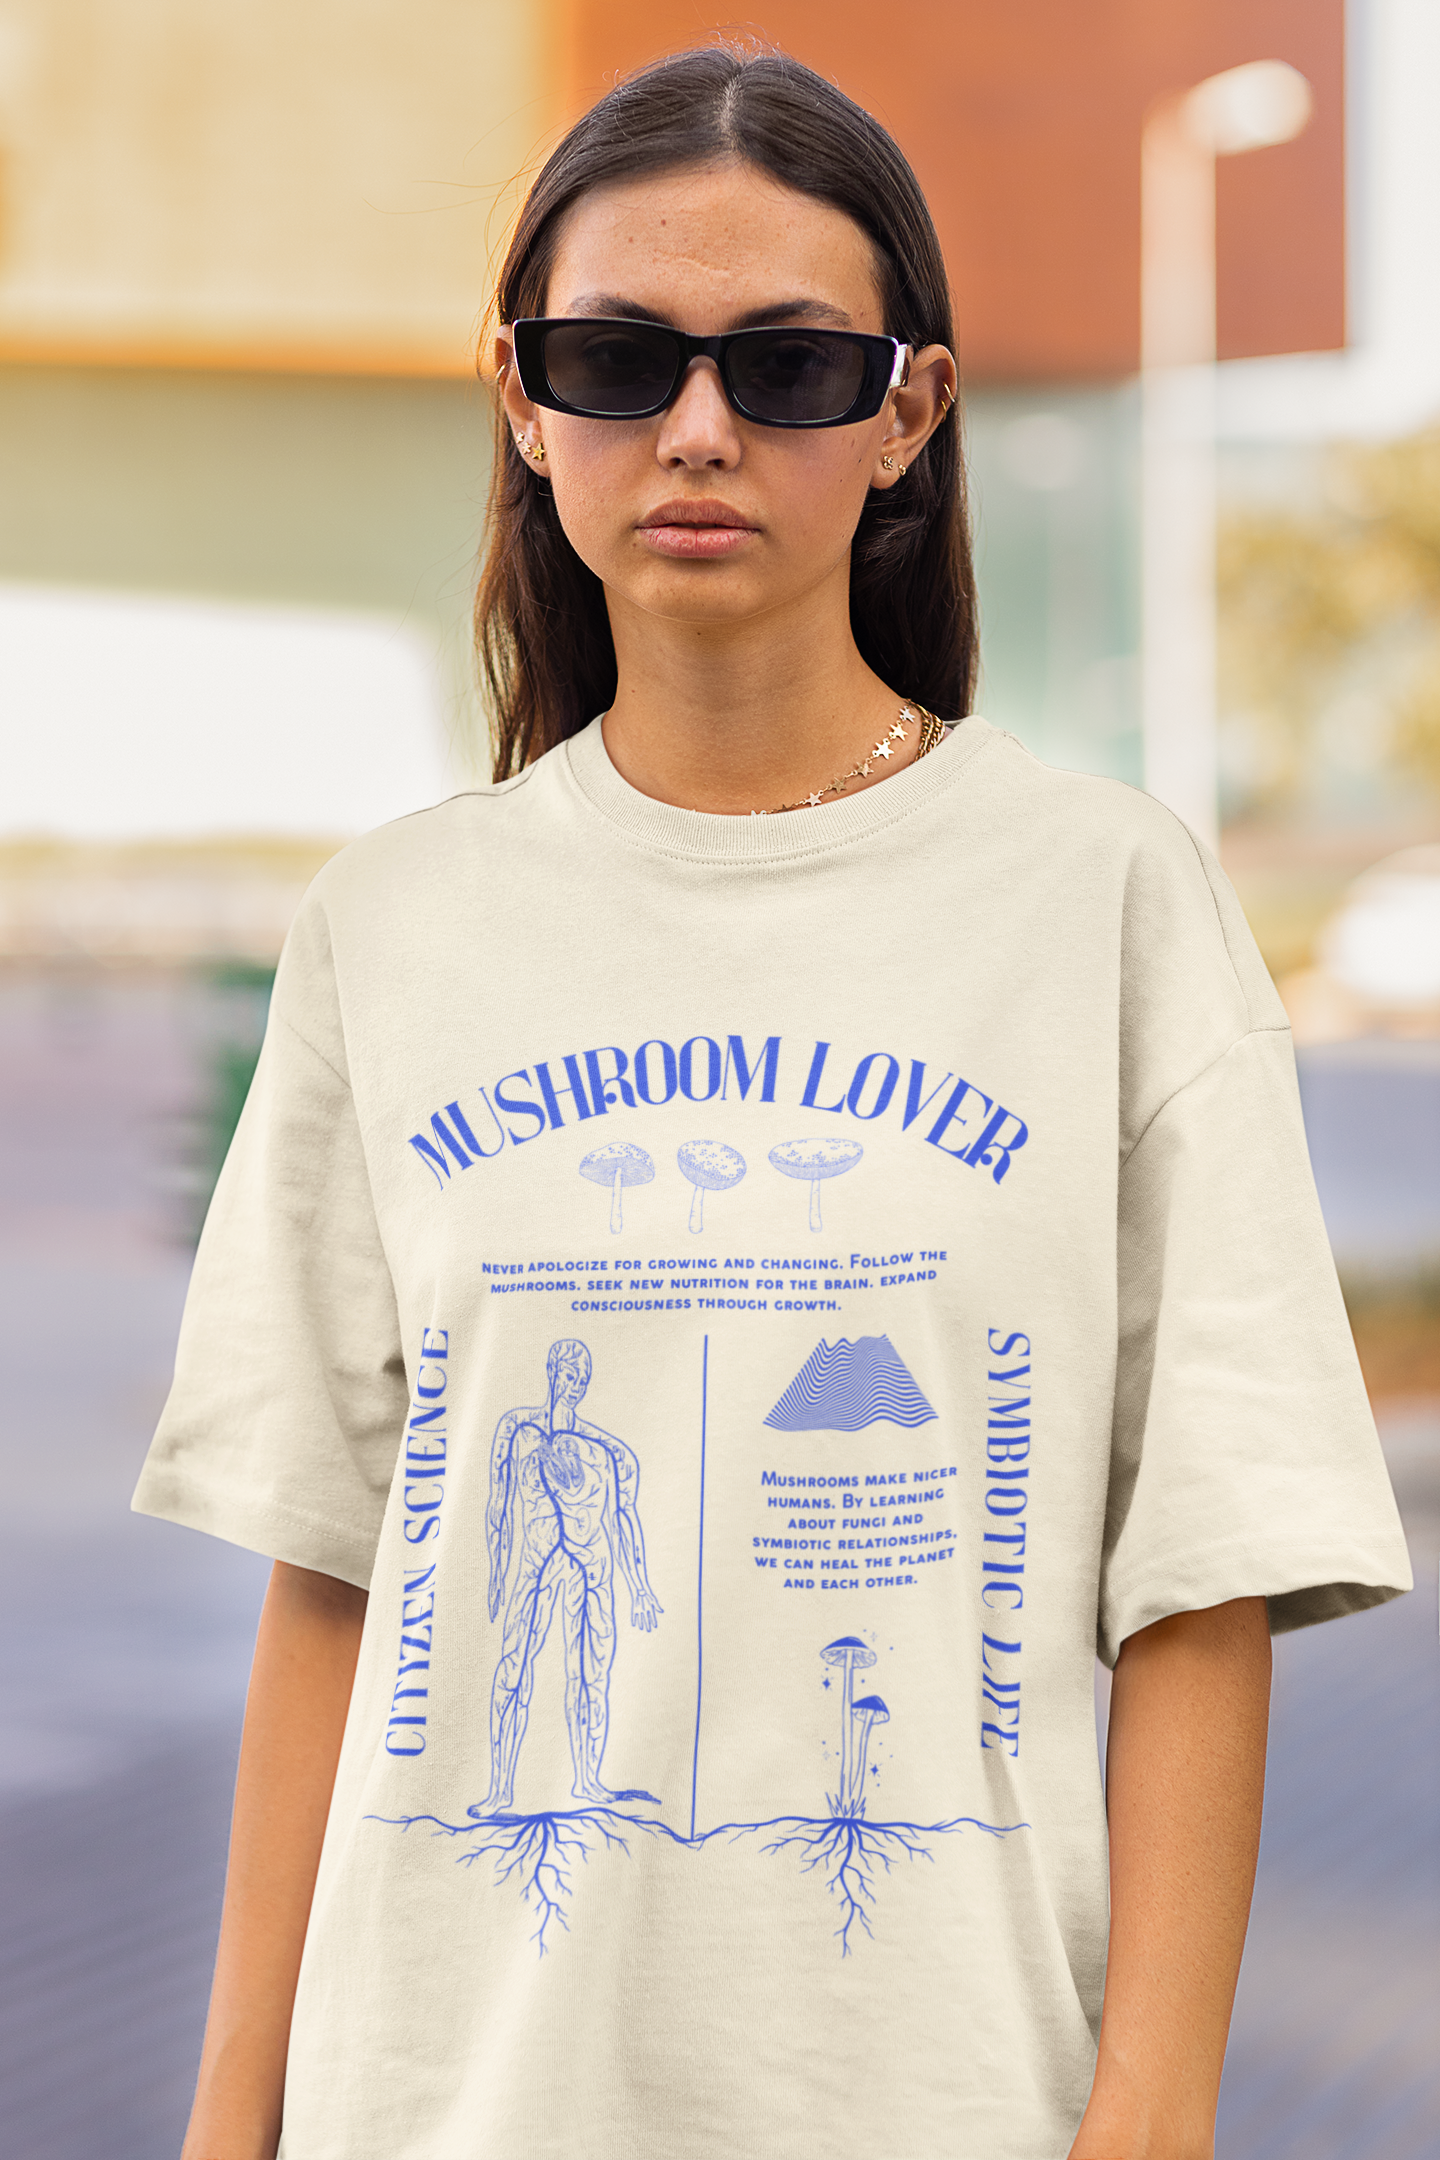 Mushroom Lover Unisex T-Shirt